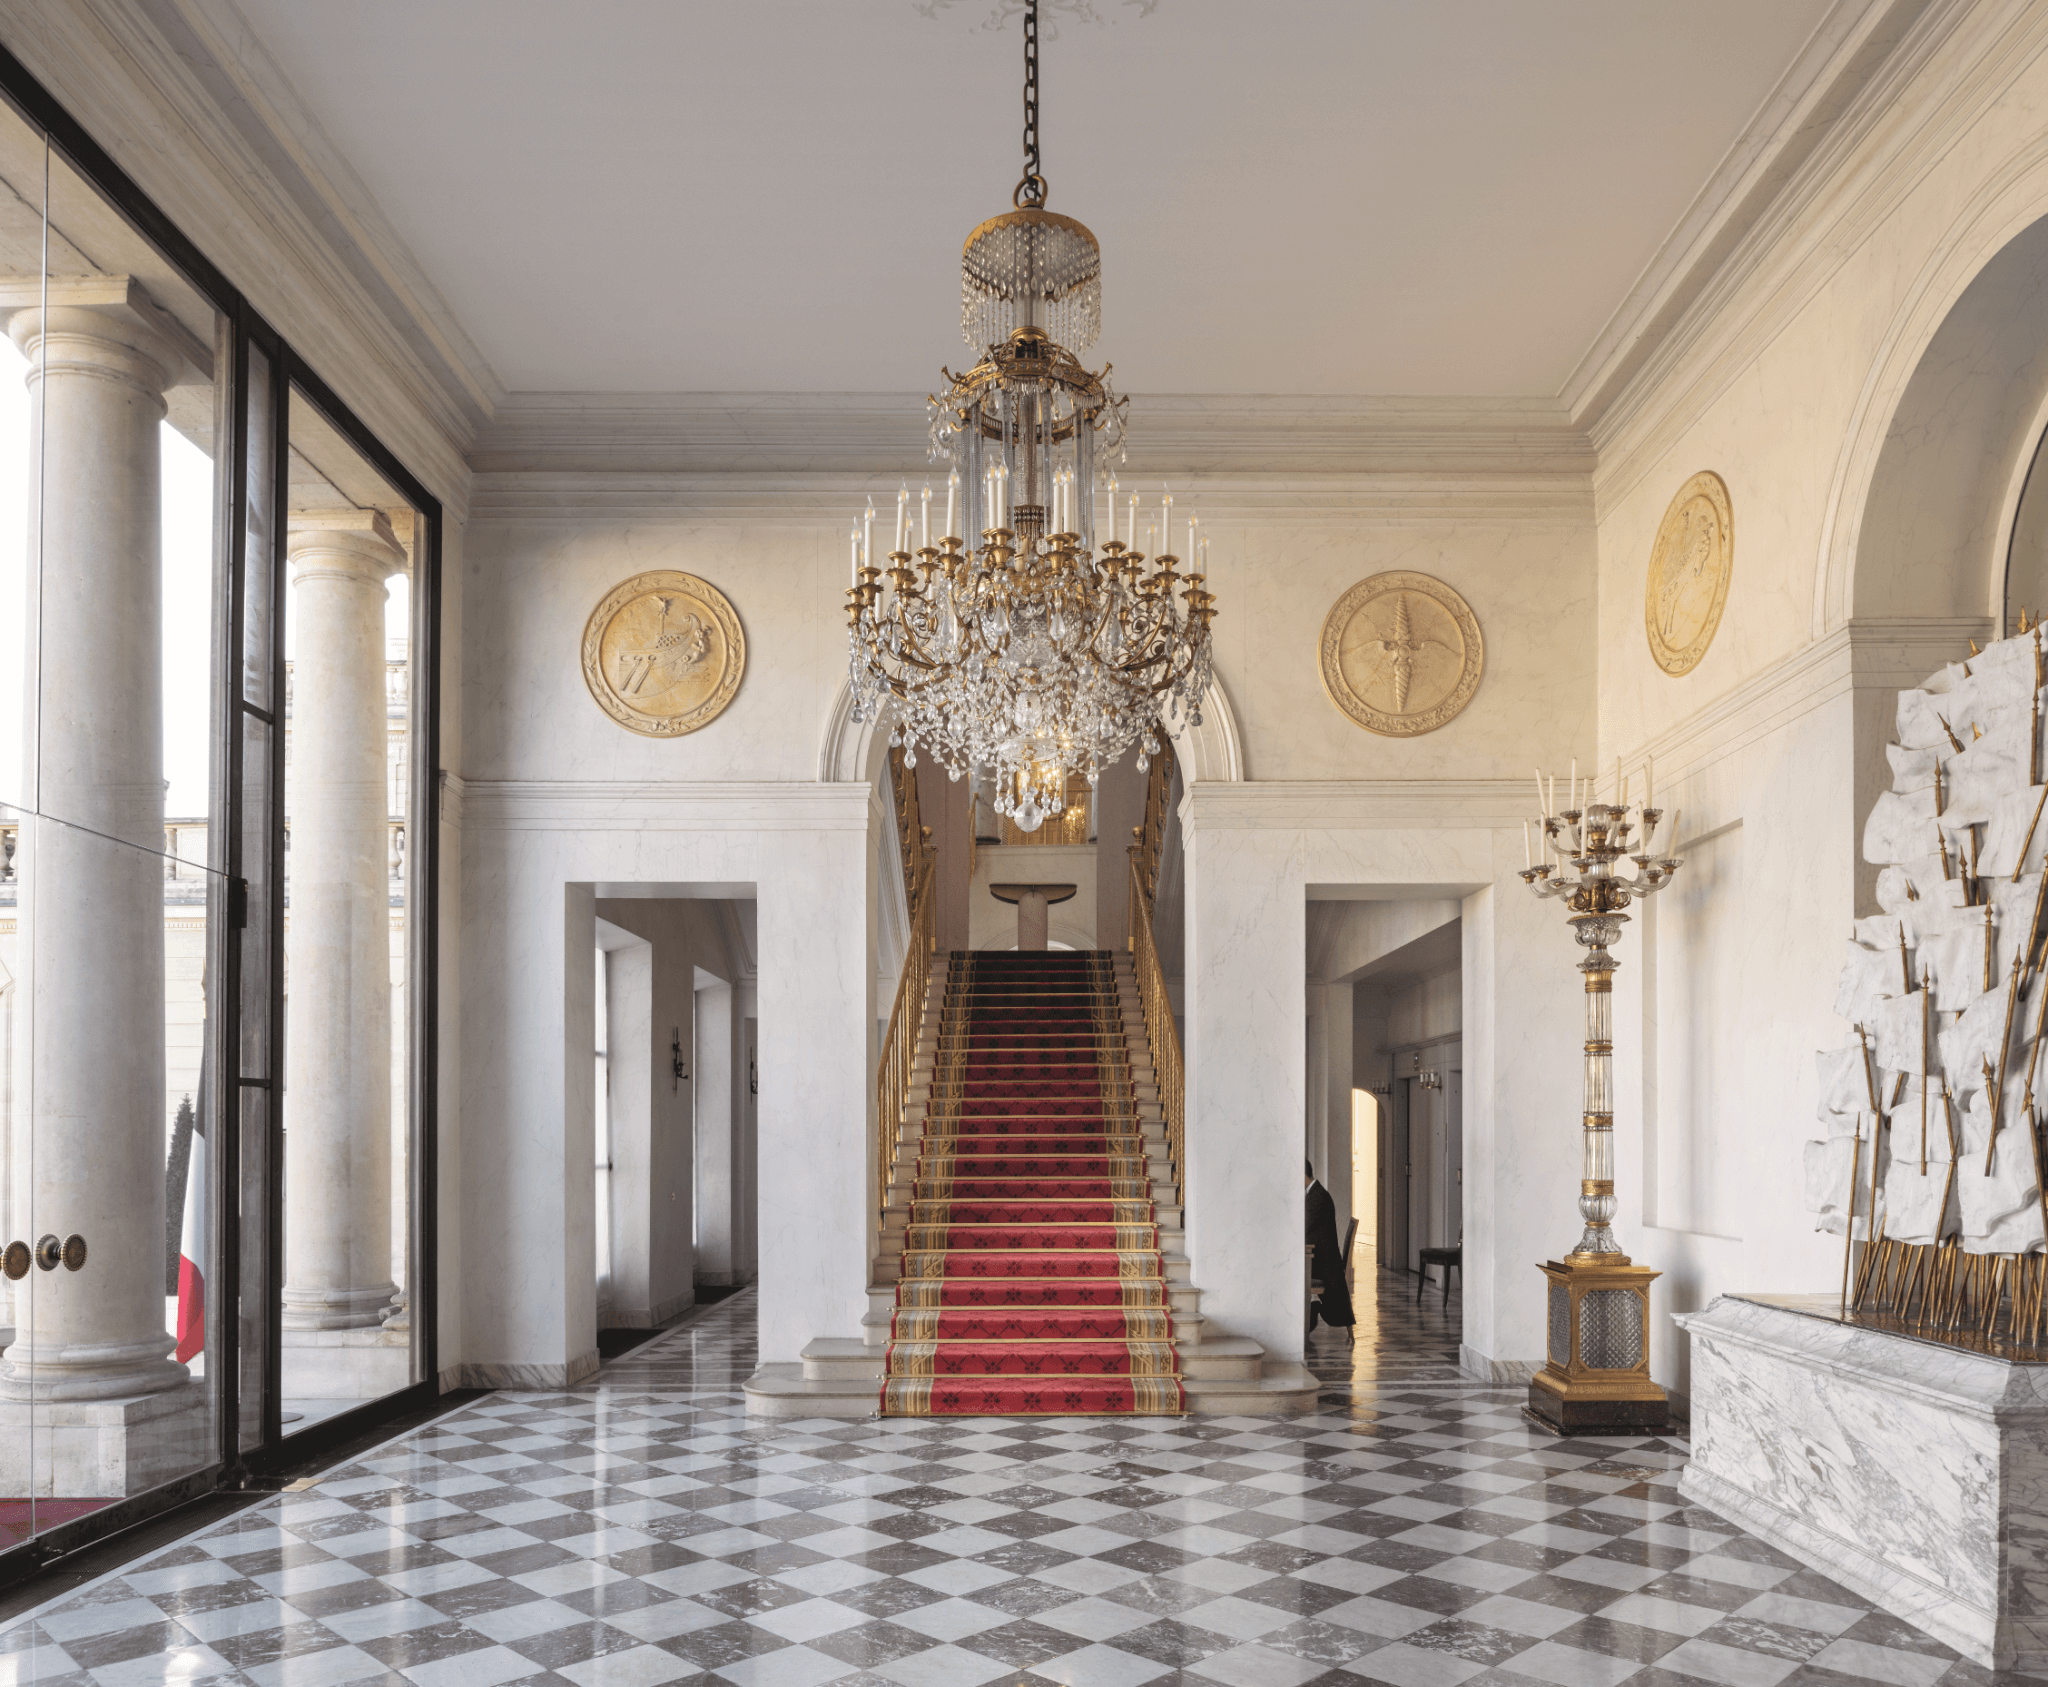 Le grand vestibule de l'Élysée où les présidents accueillent leurs hôtes. © Ambroise Tézenas